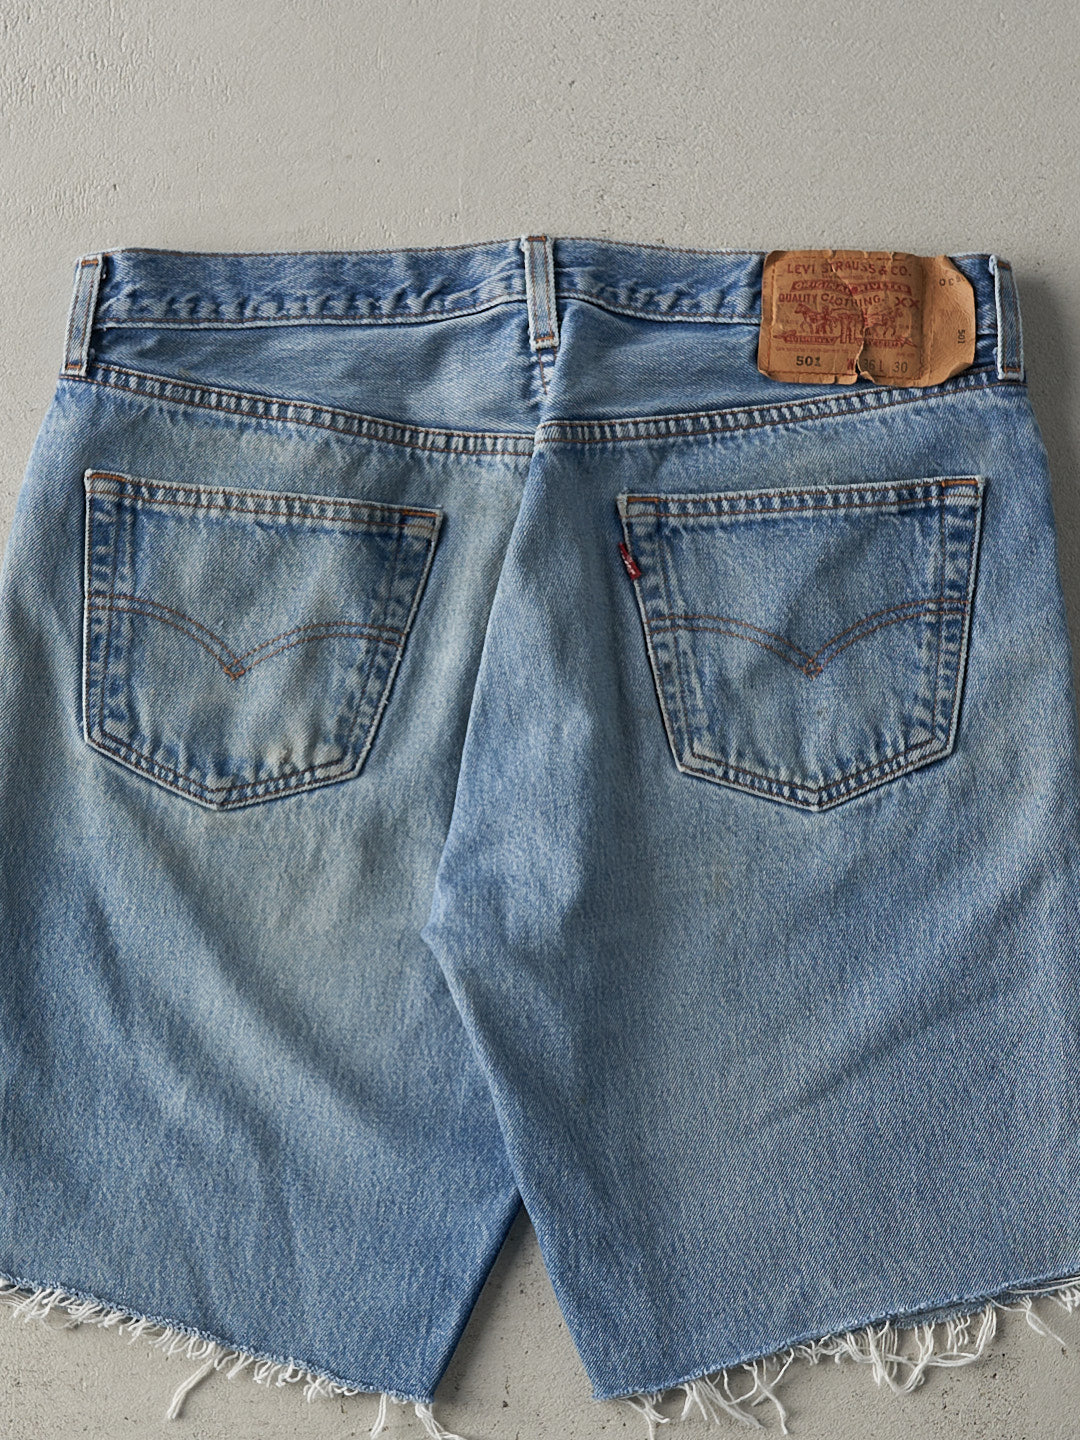 Vintage 90s Light Wash Levi's 501 Cut Off Jean Shorts (35.5x9)